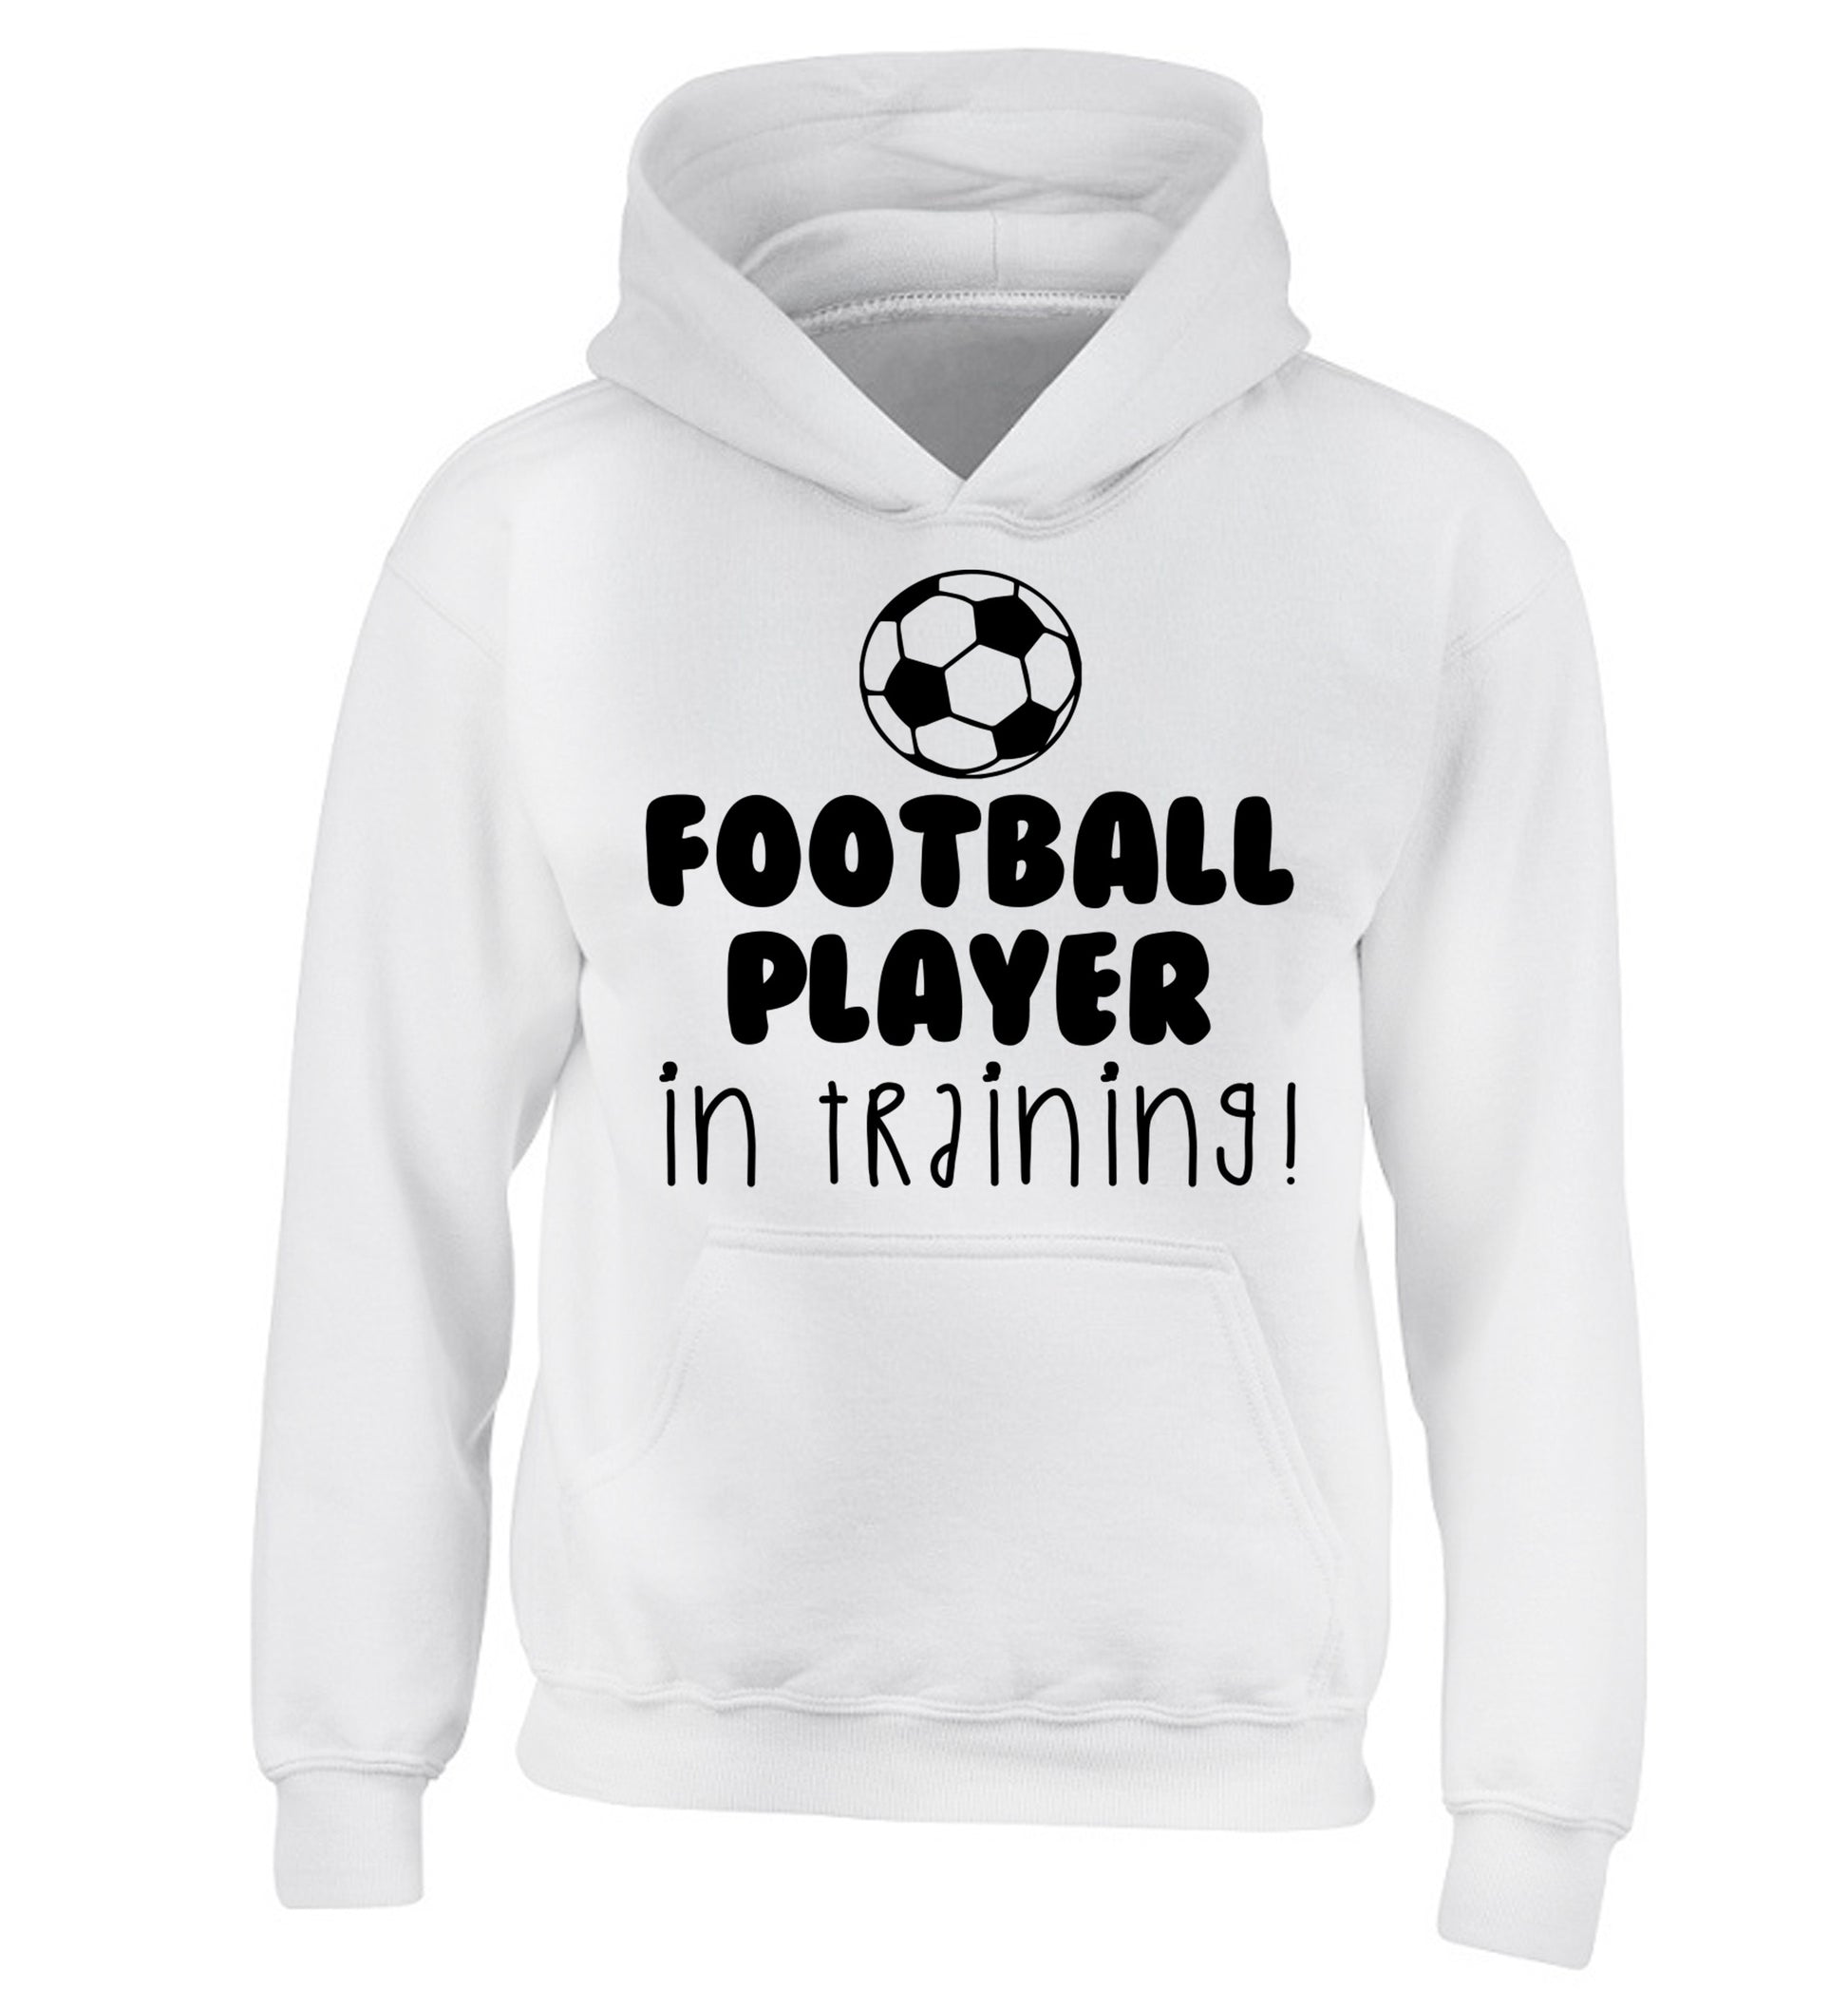 Football player in training children's white hoodie 12-14 Years